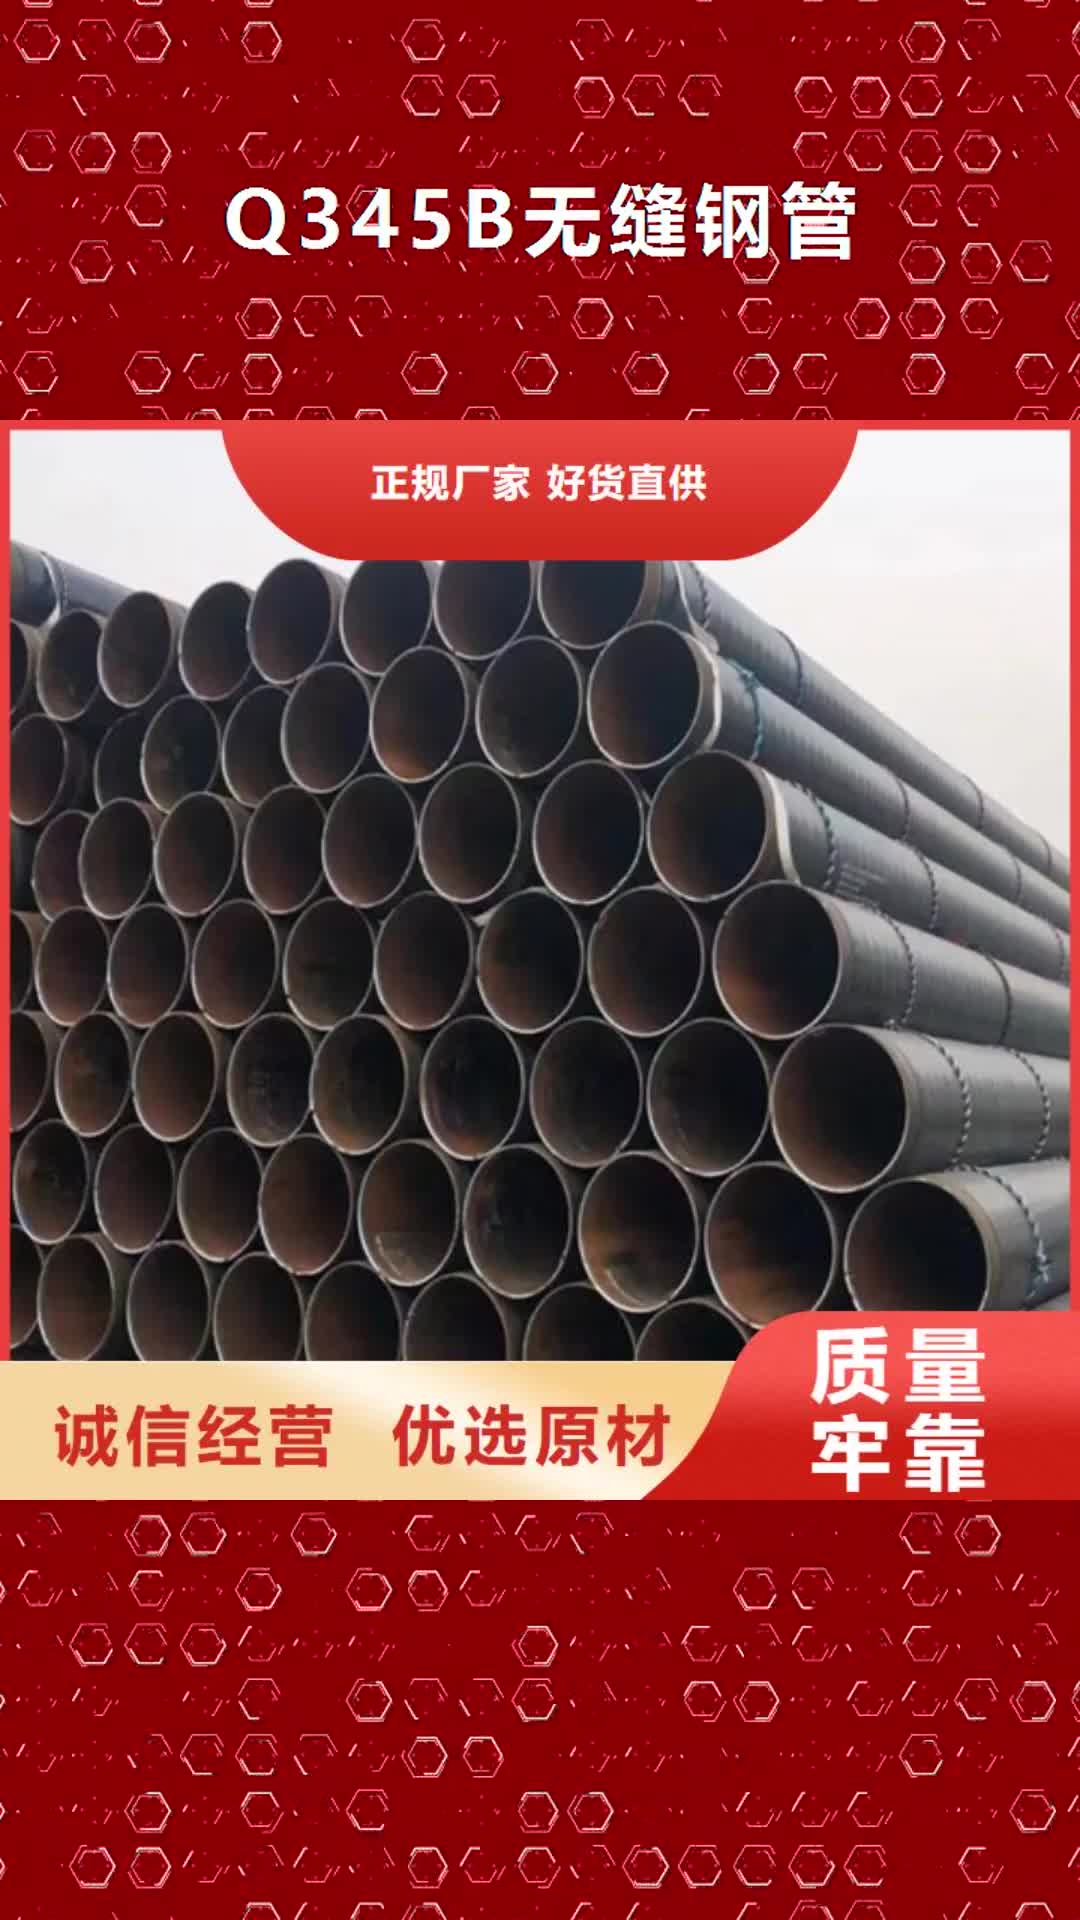 安徽【Q345B无缝钢管】,锅炉管通过国家检测